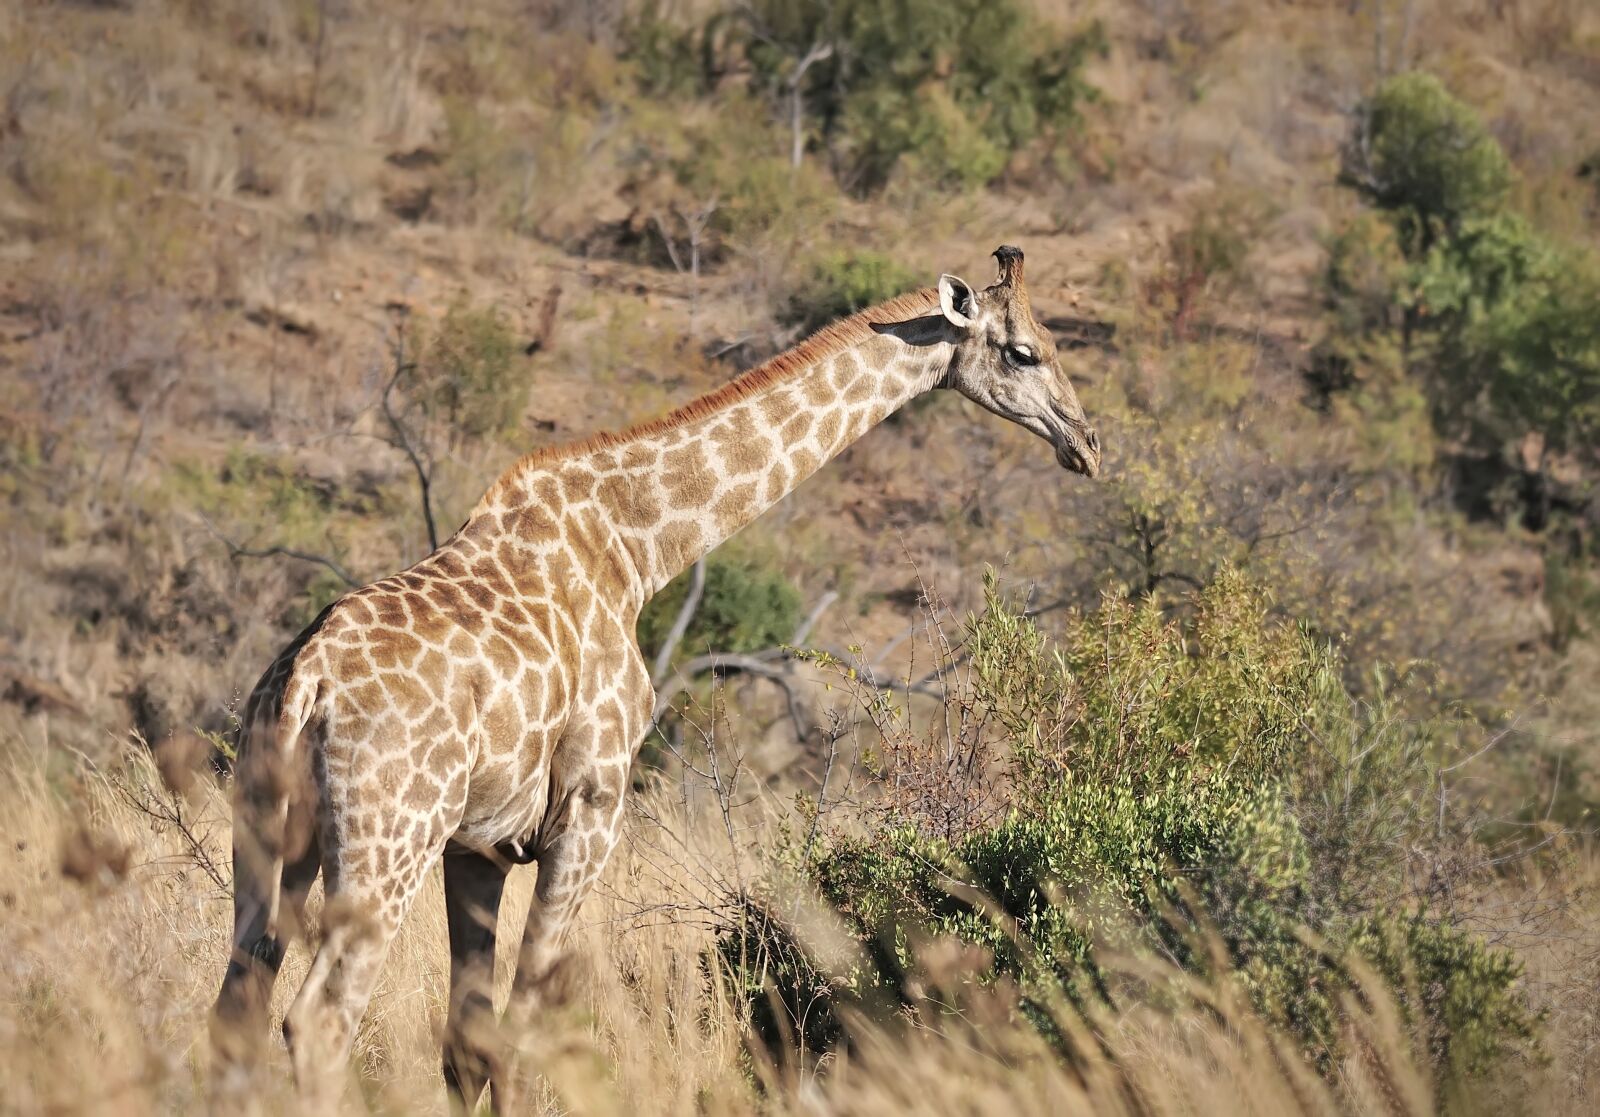 Nikon D300S sample photo. Giraffe, animals, safari photography